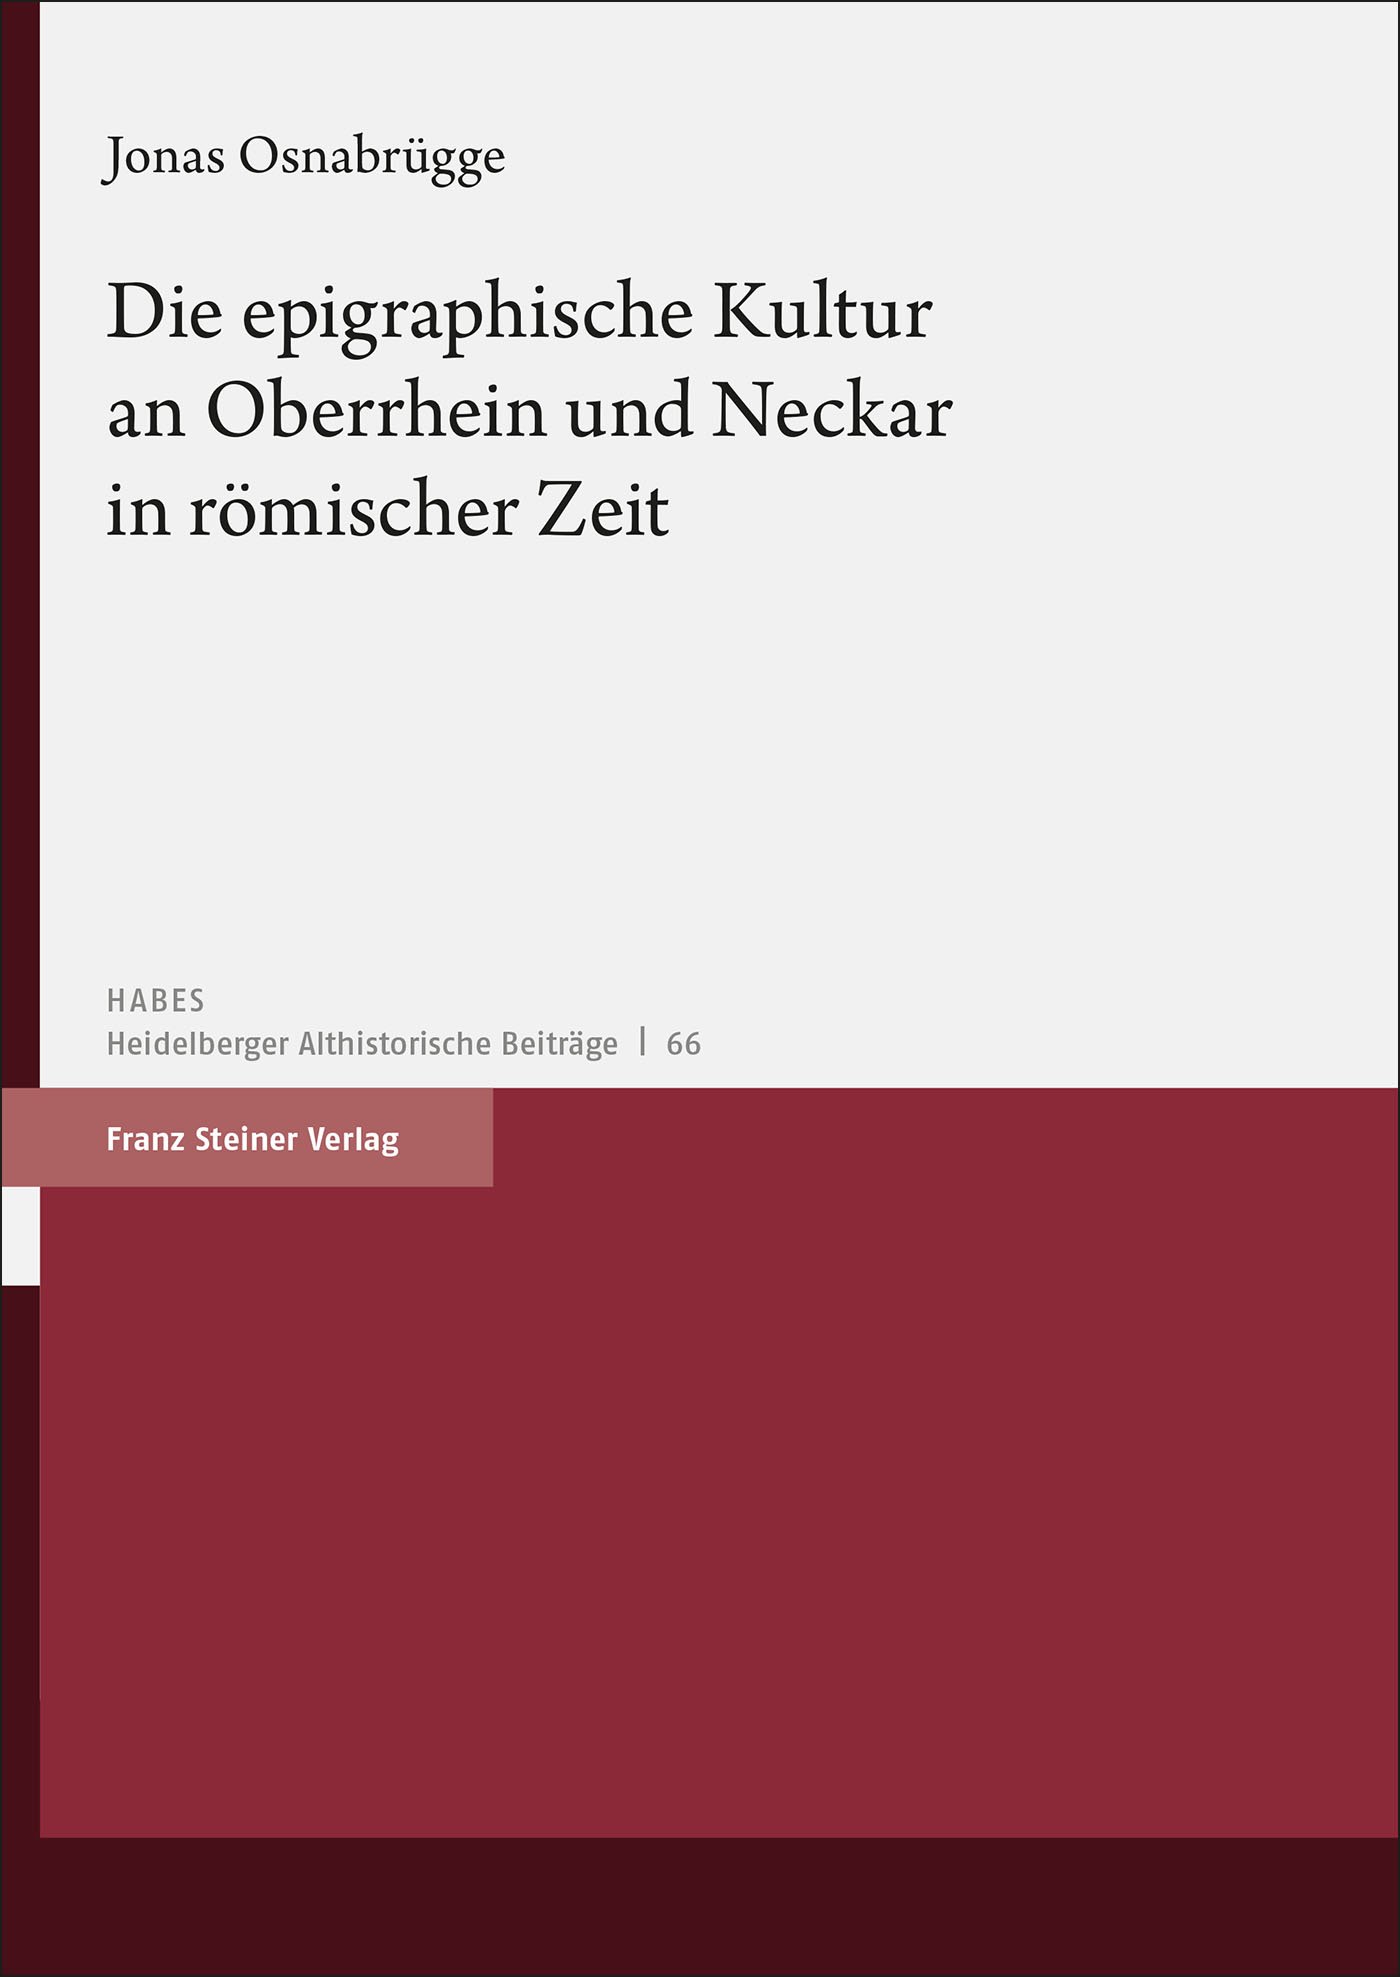 Die epigraphische Kultur an Oberrhein und Neckar in römischer Zeit